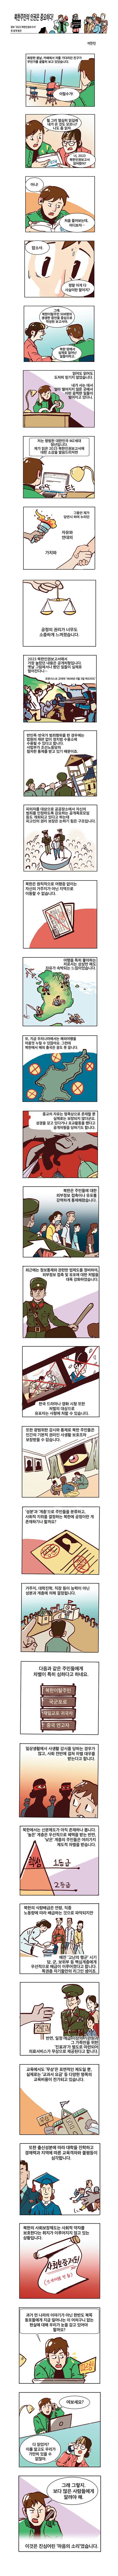 북한주민의 인권은 중요하다!